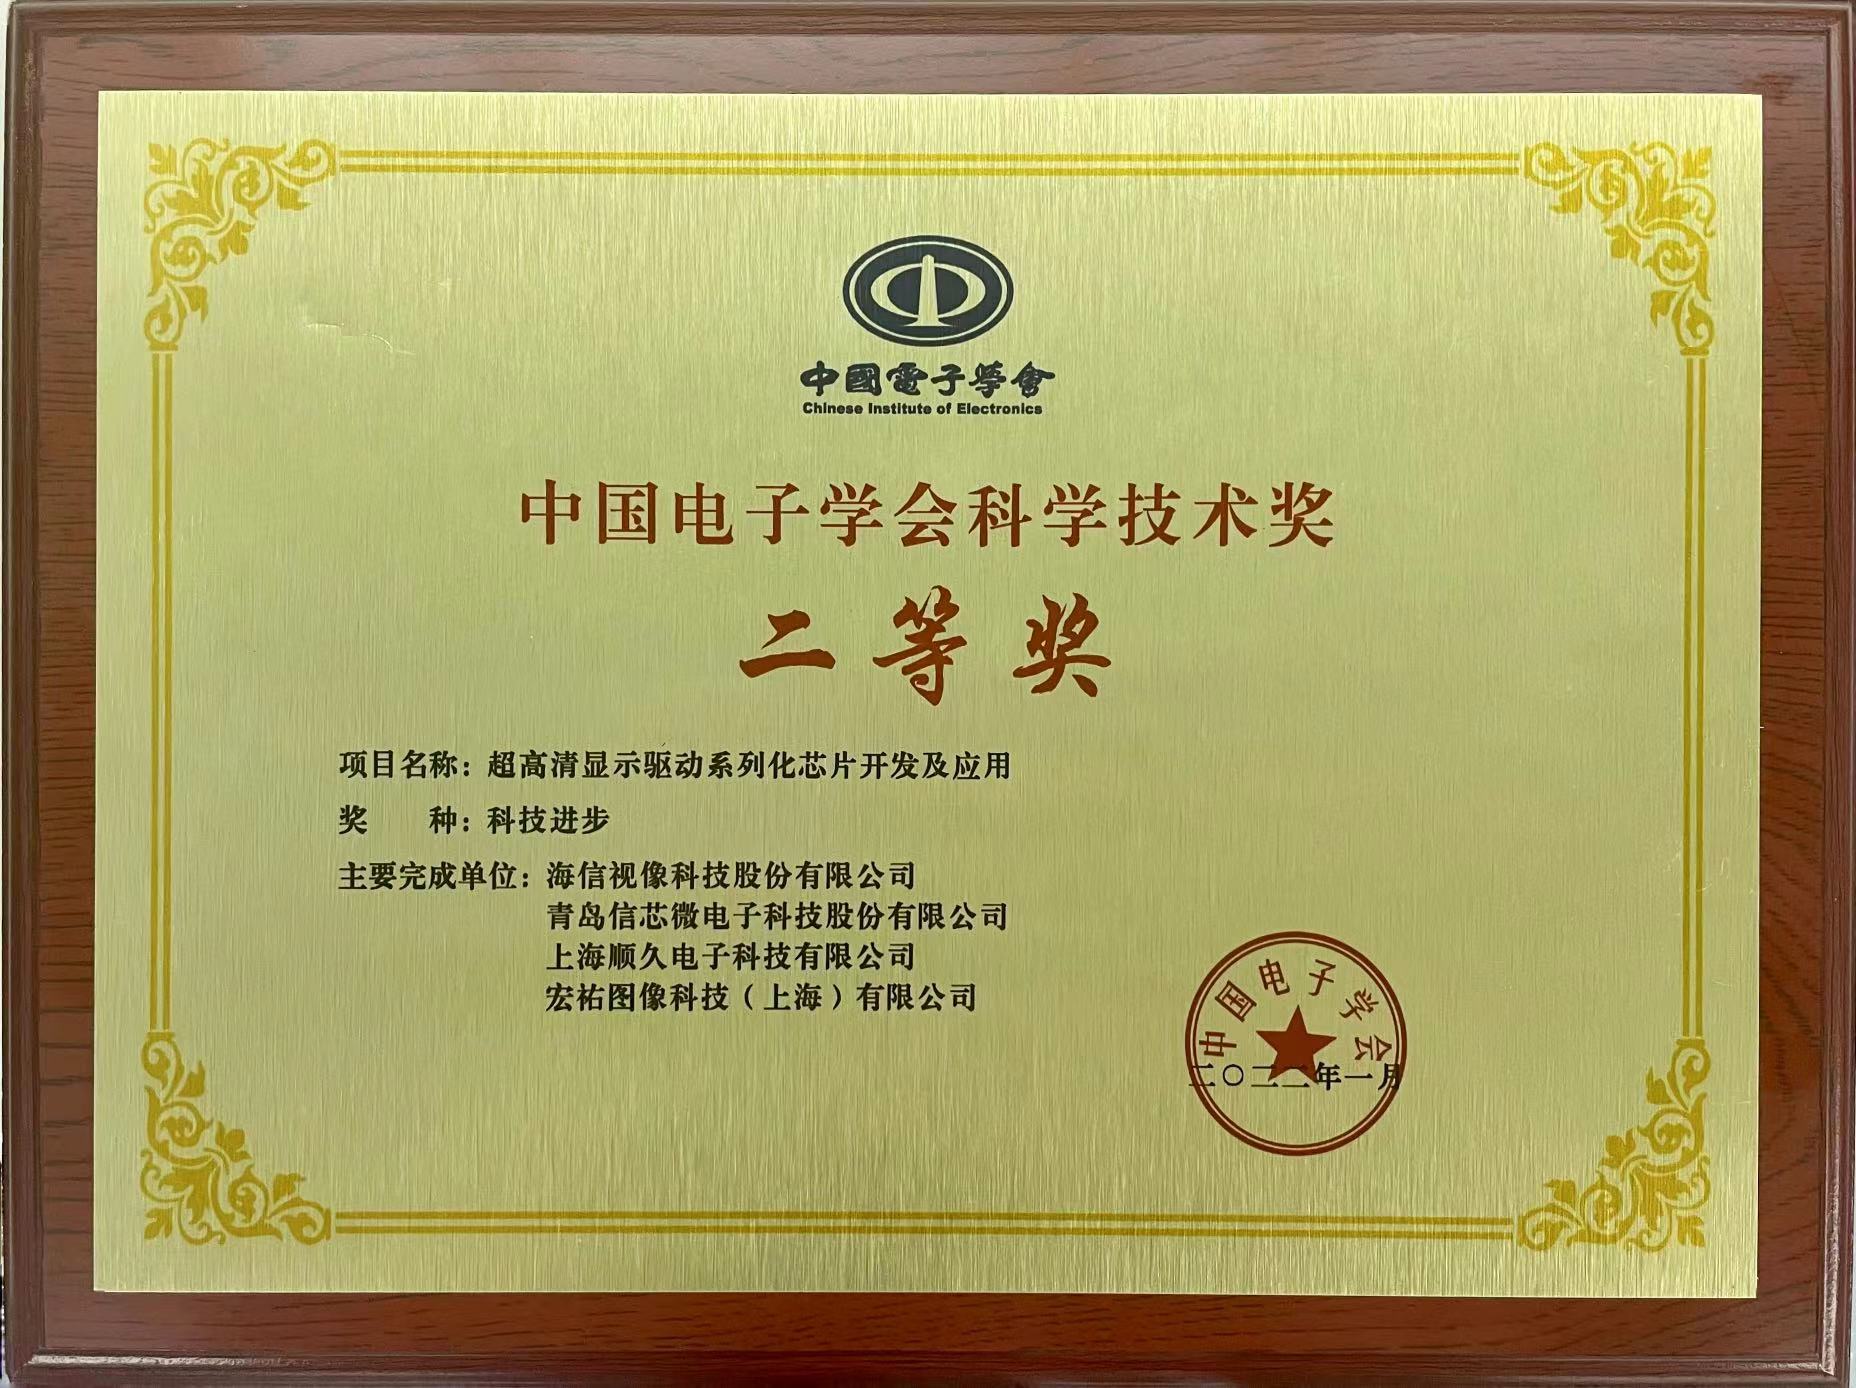 信芯微公司荣获中国电子学会科学技术奖